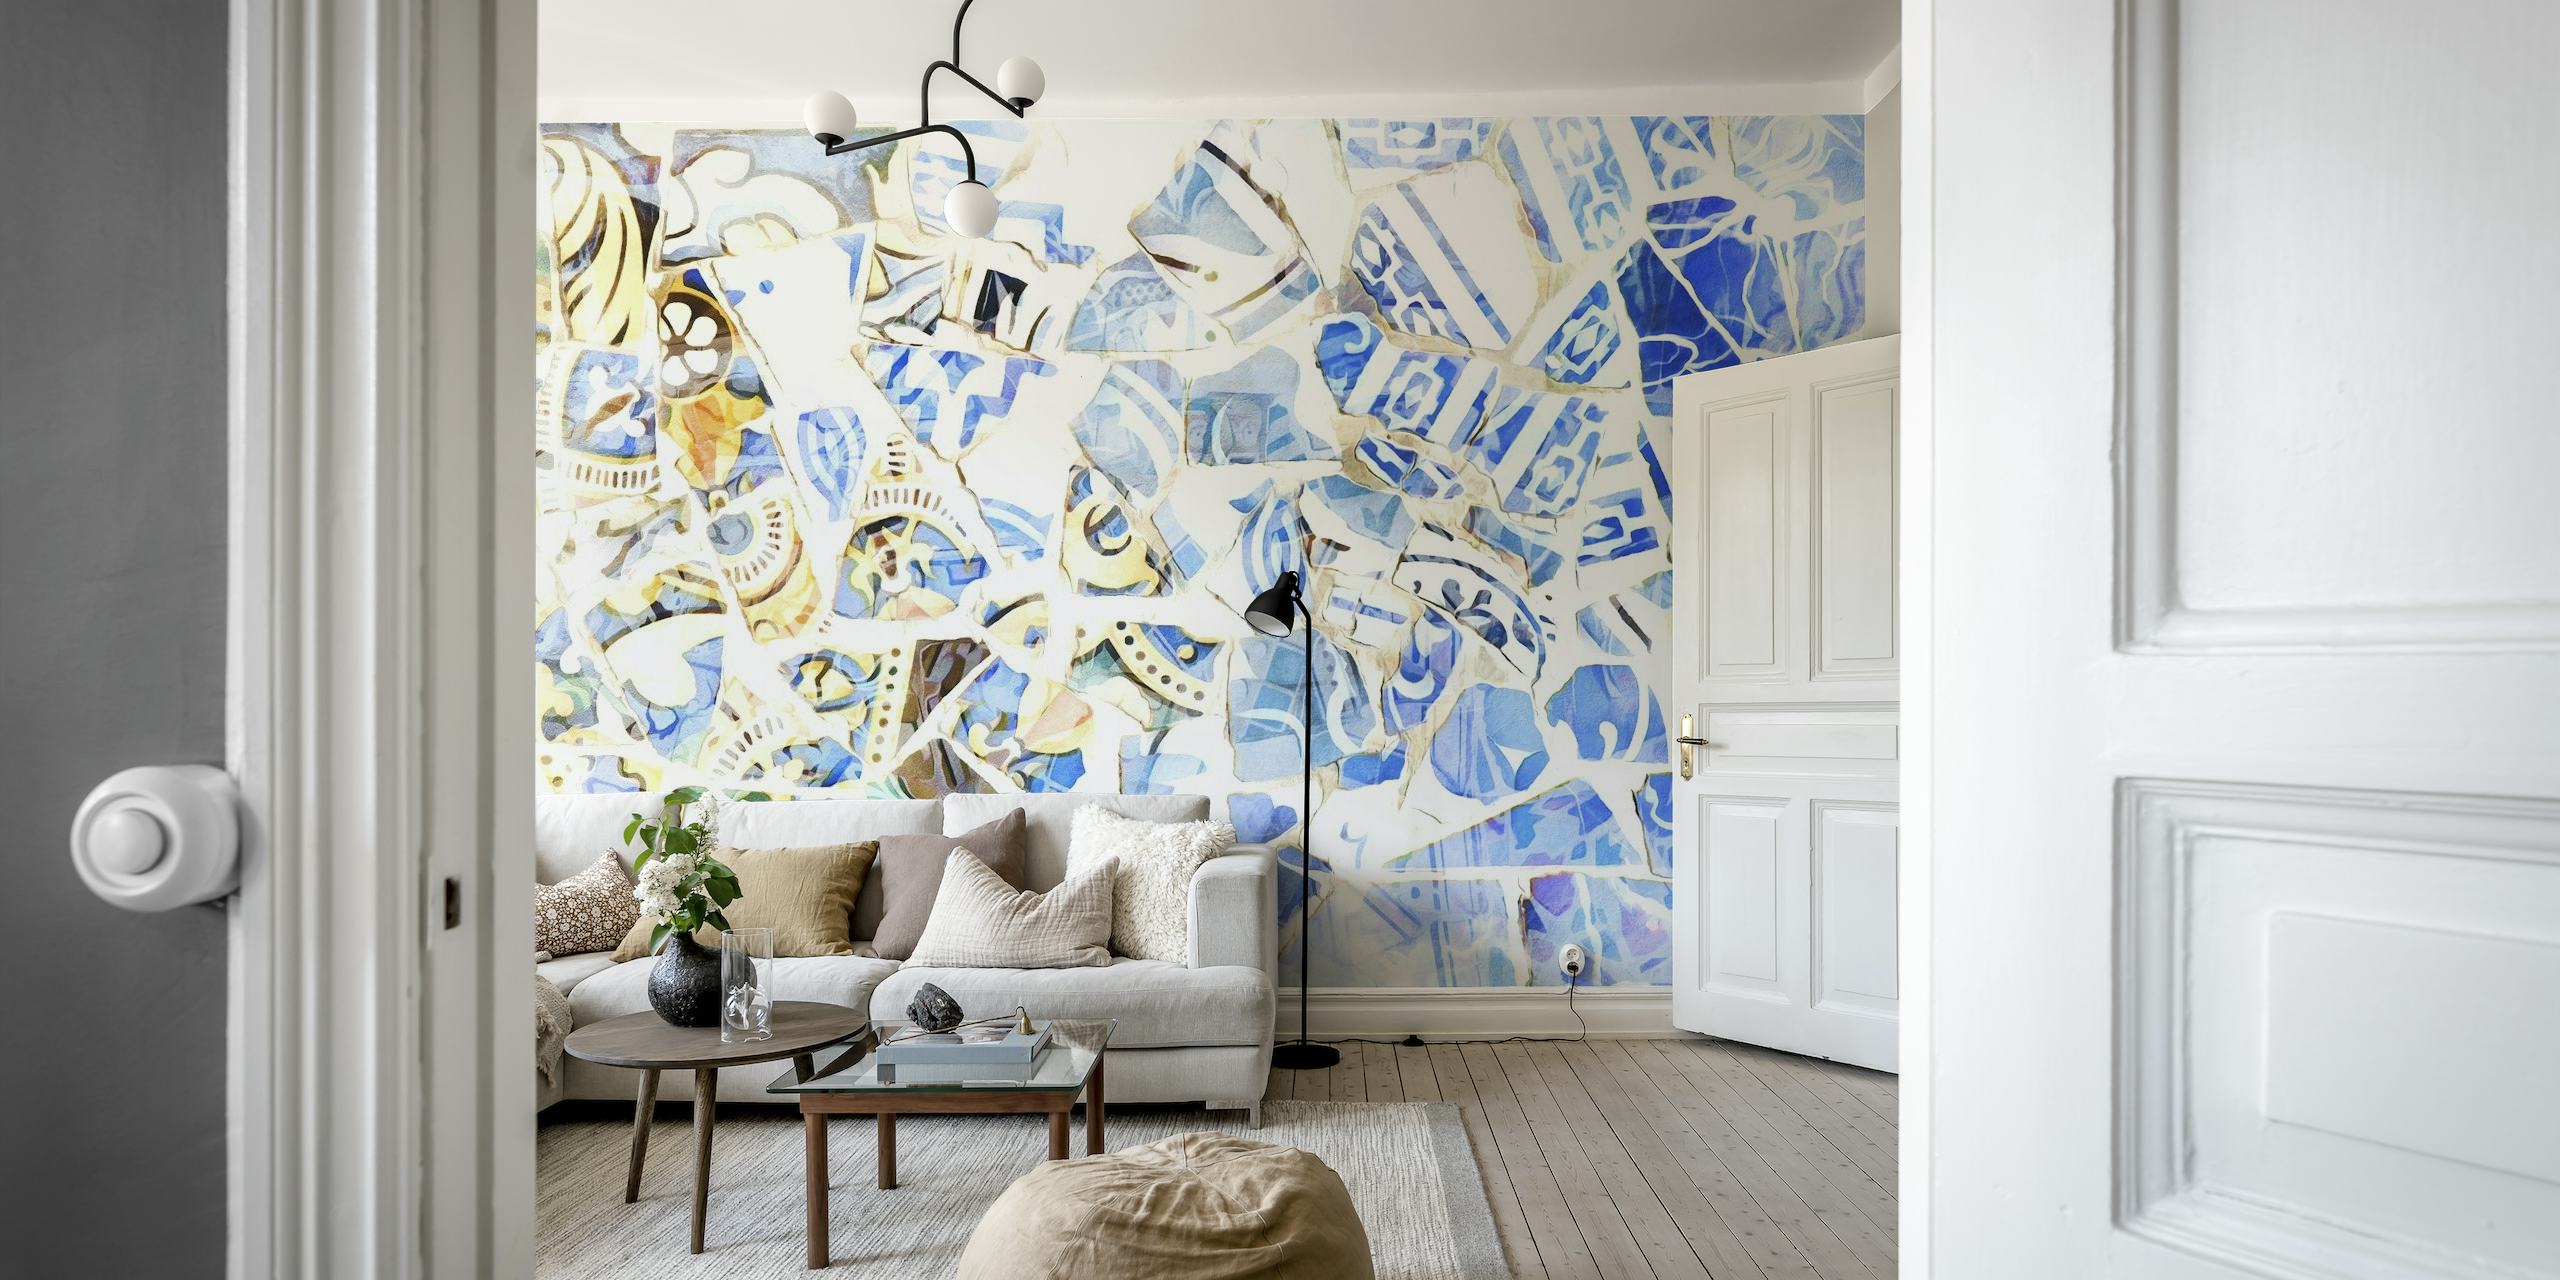 Abstraktní mozaiková nástěnná malba v odstínech modré a bílé, inspirovaná barcelonským uměním